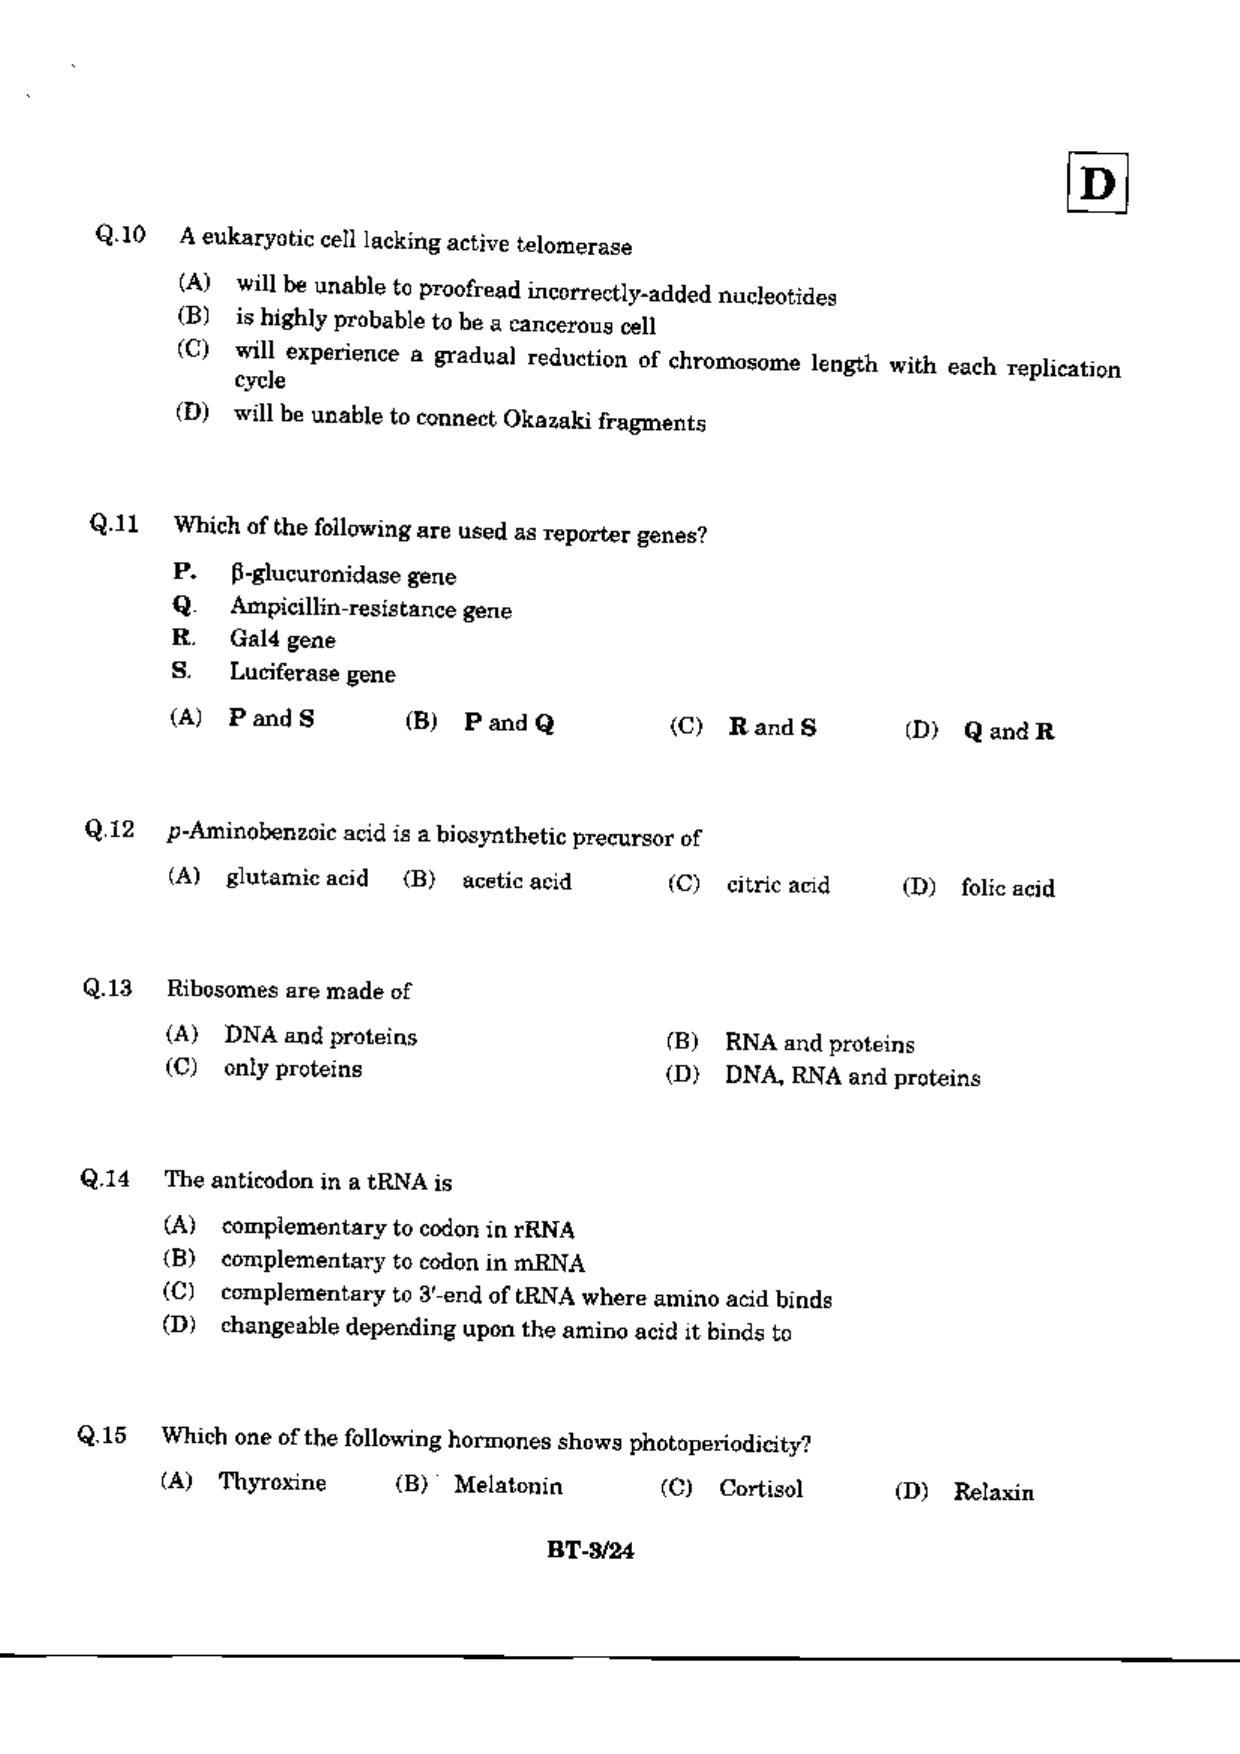 JAM 2010: BT Question Paper - Page 5